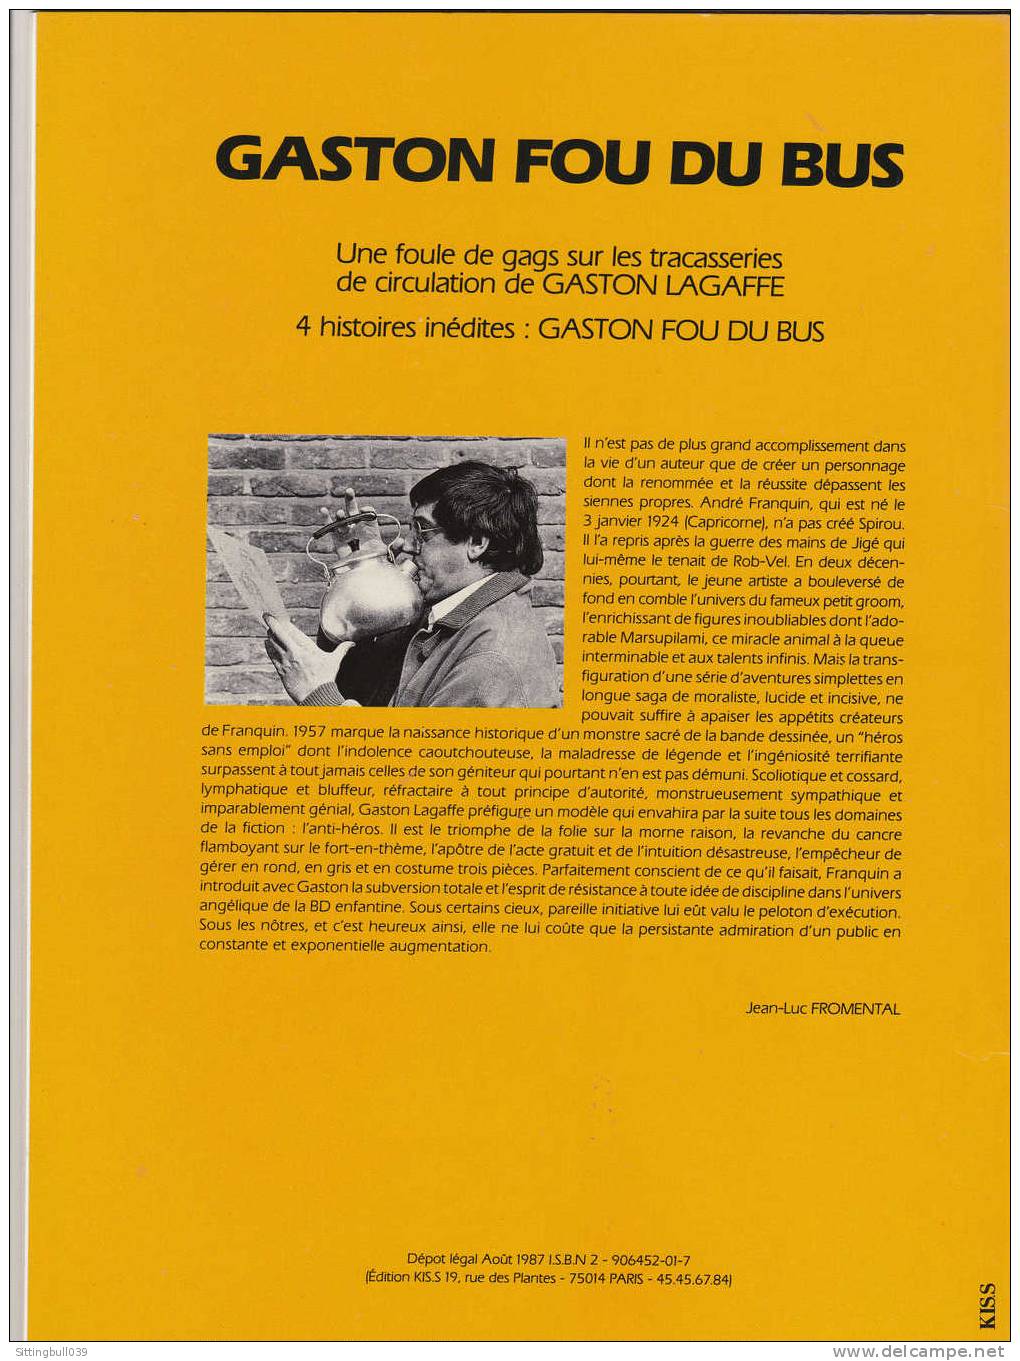 FRANQUIN. GASTON FOU DU BUS. EO 1987. Album Pub. Pour Les Transports Publics. 4 Histoires Inédites. Ed KIS.S. Logo RATP. - Advertentie